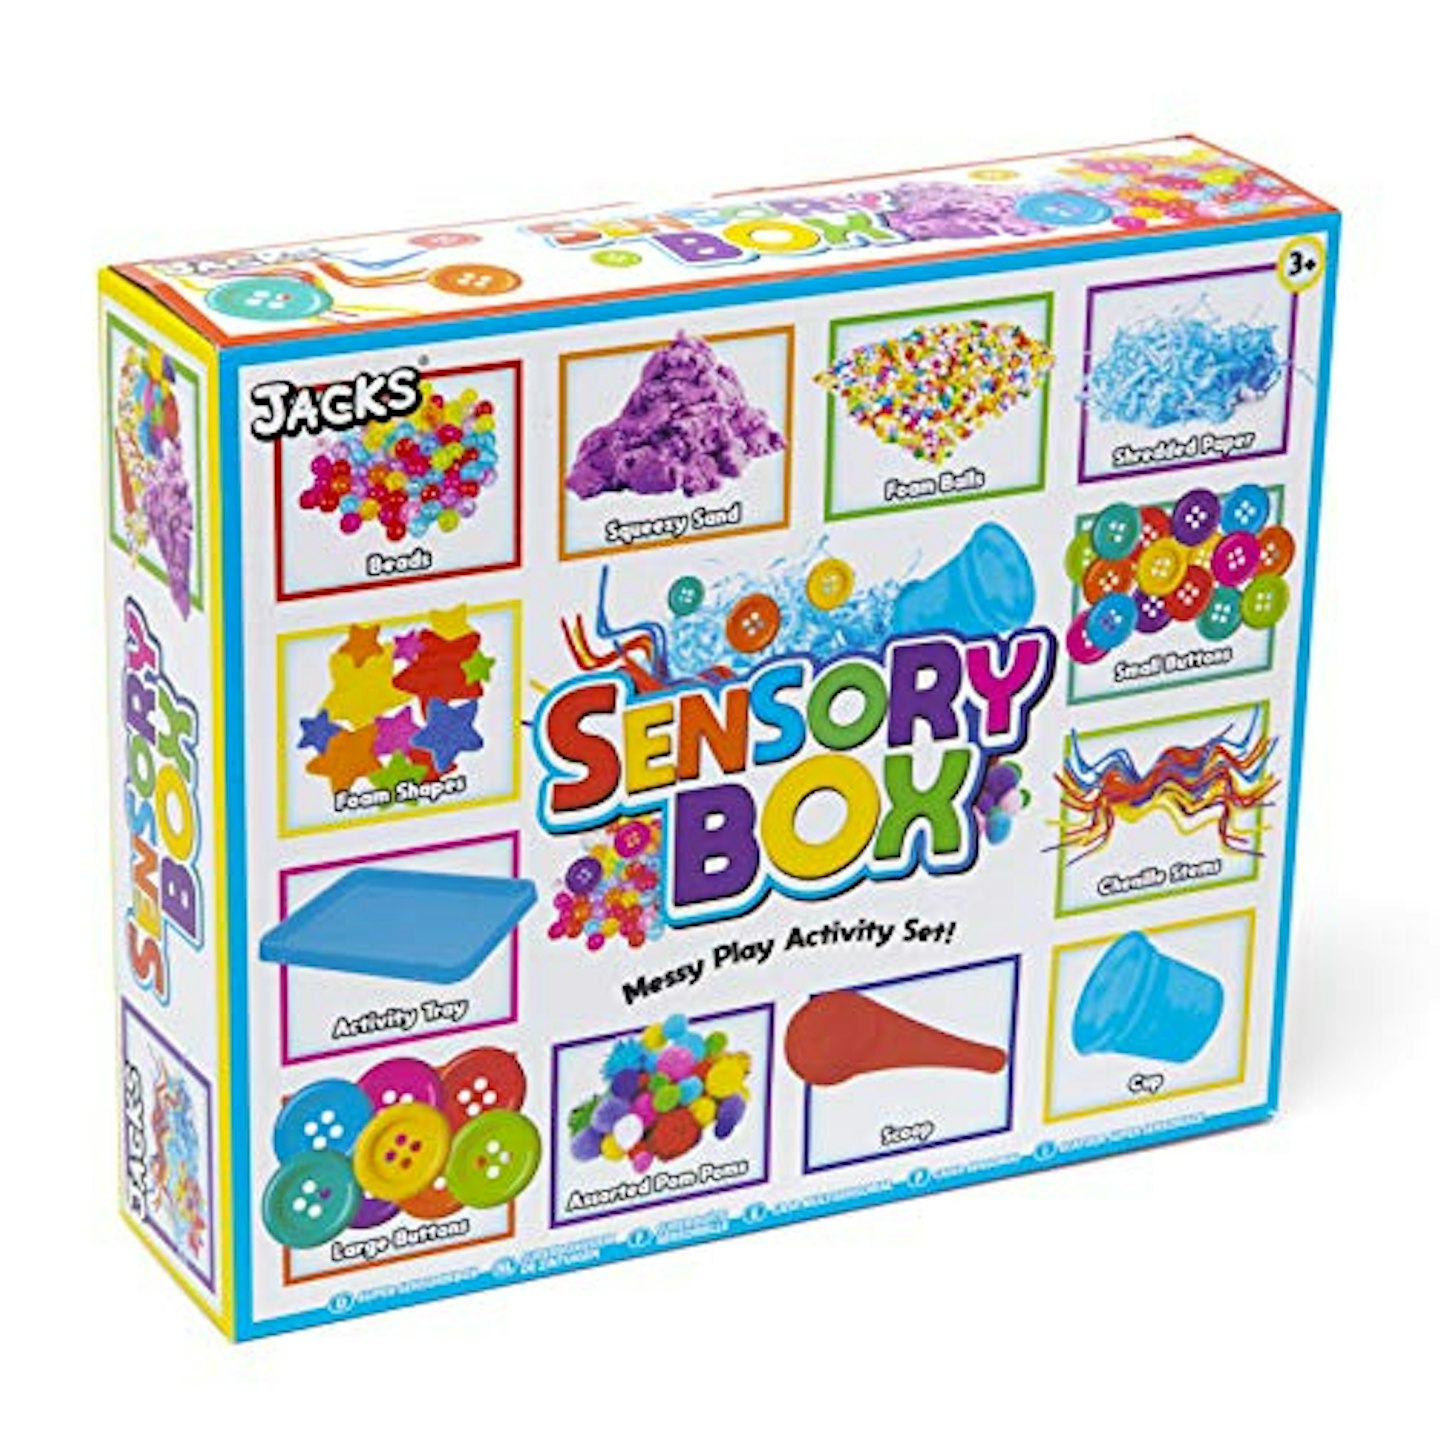 Sensory Box Messy Play Activity Set